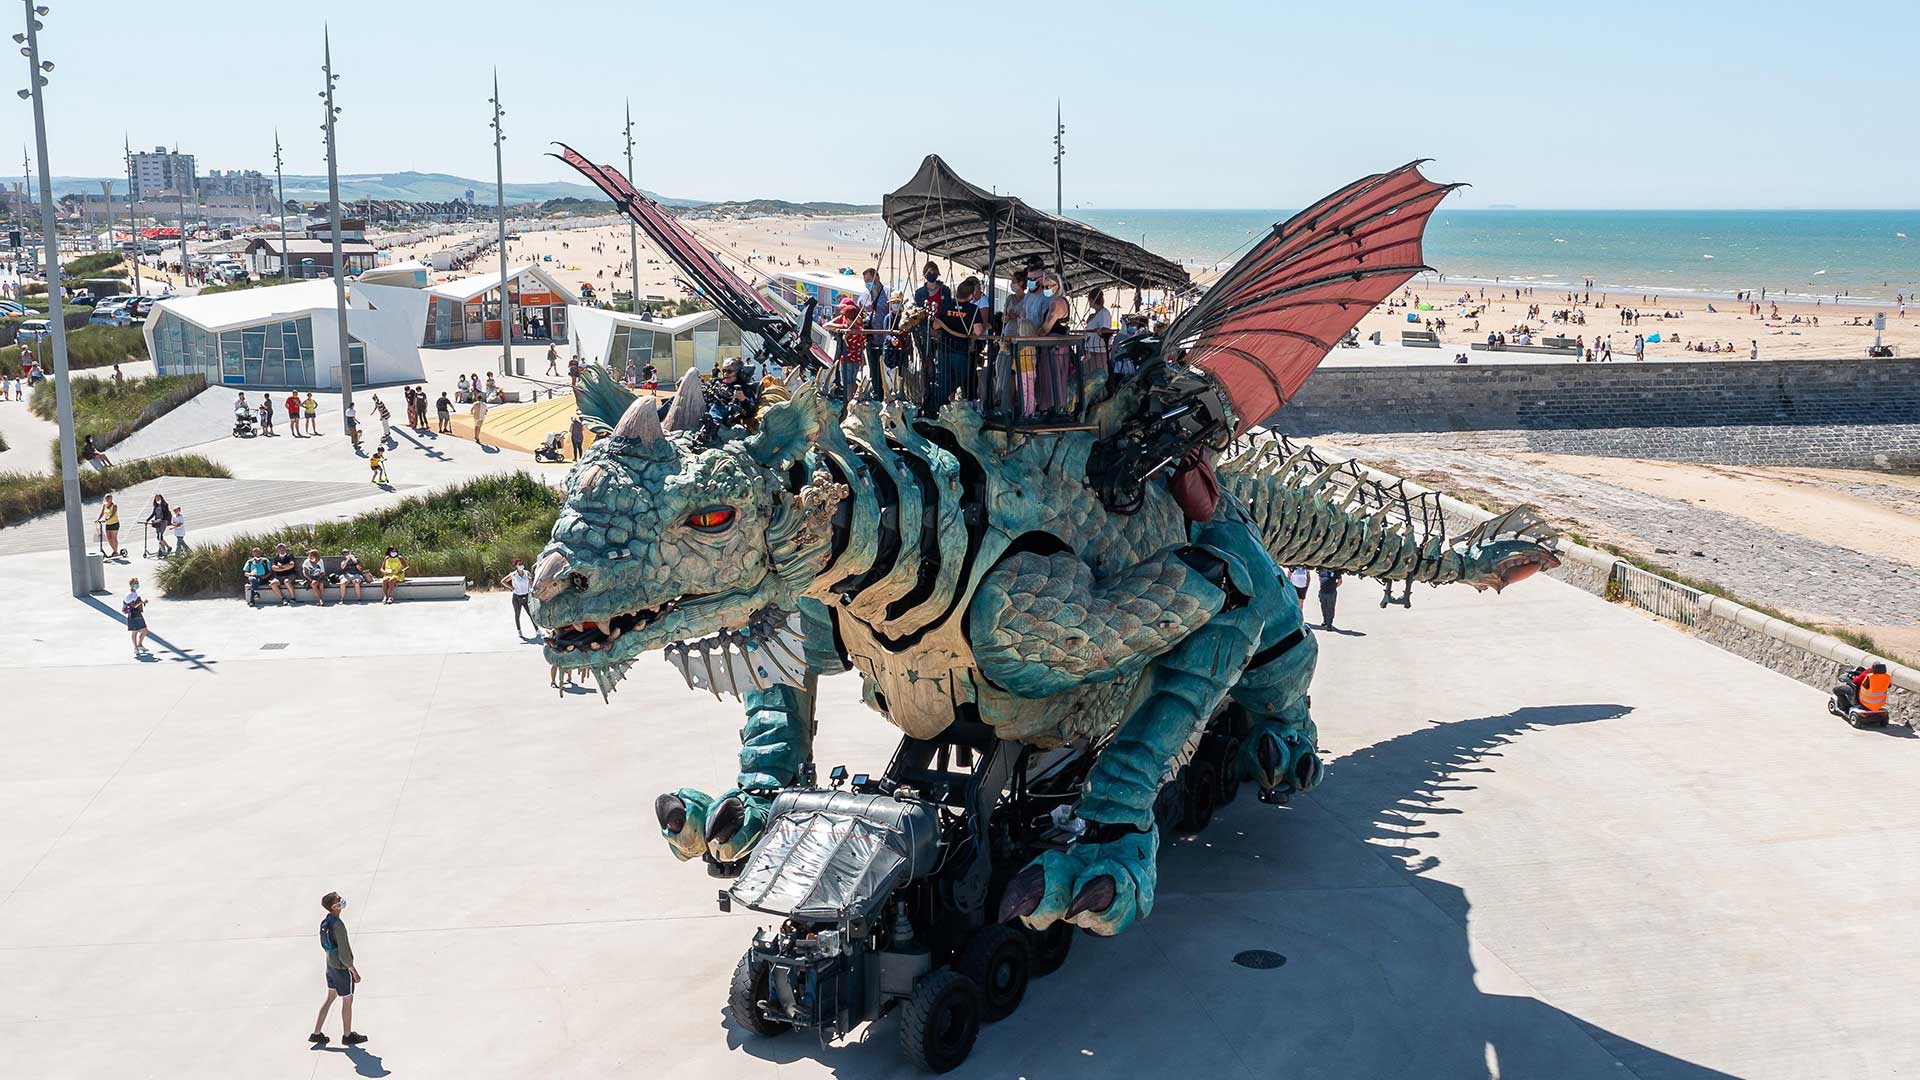 Le Dragon de Calais toutes ailes déployées en vue aérienne sur Calais La Plage